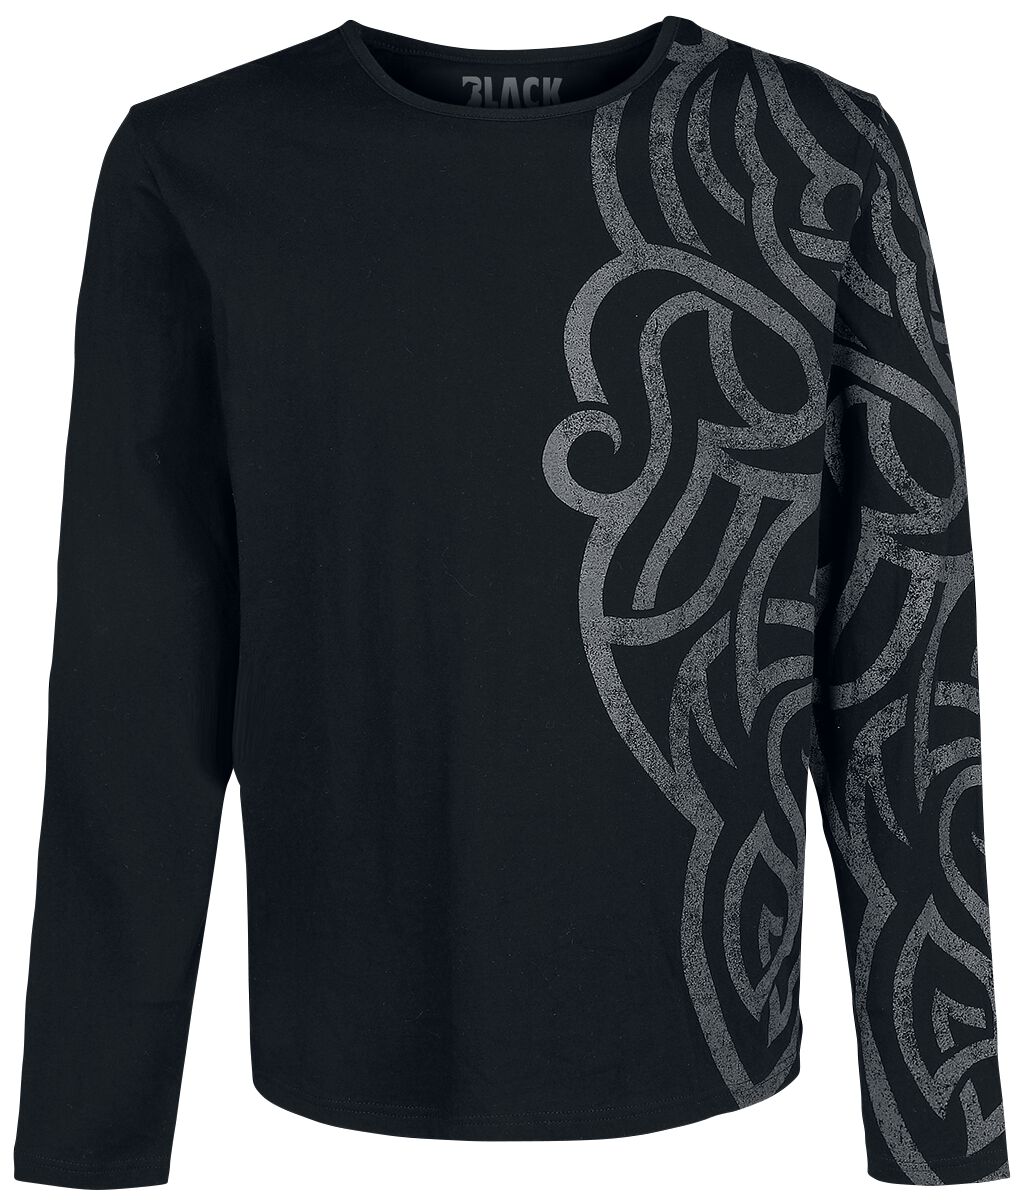 T-shirt manches longues de Black Premium by EMP - Haut Manches Longues Avec Larges Ornementations - 